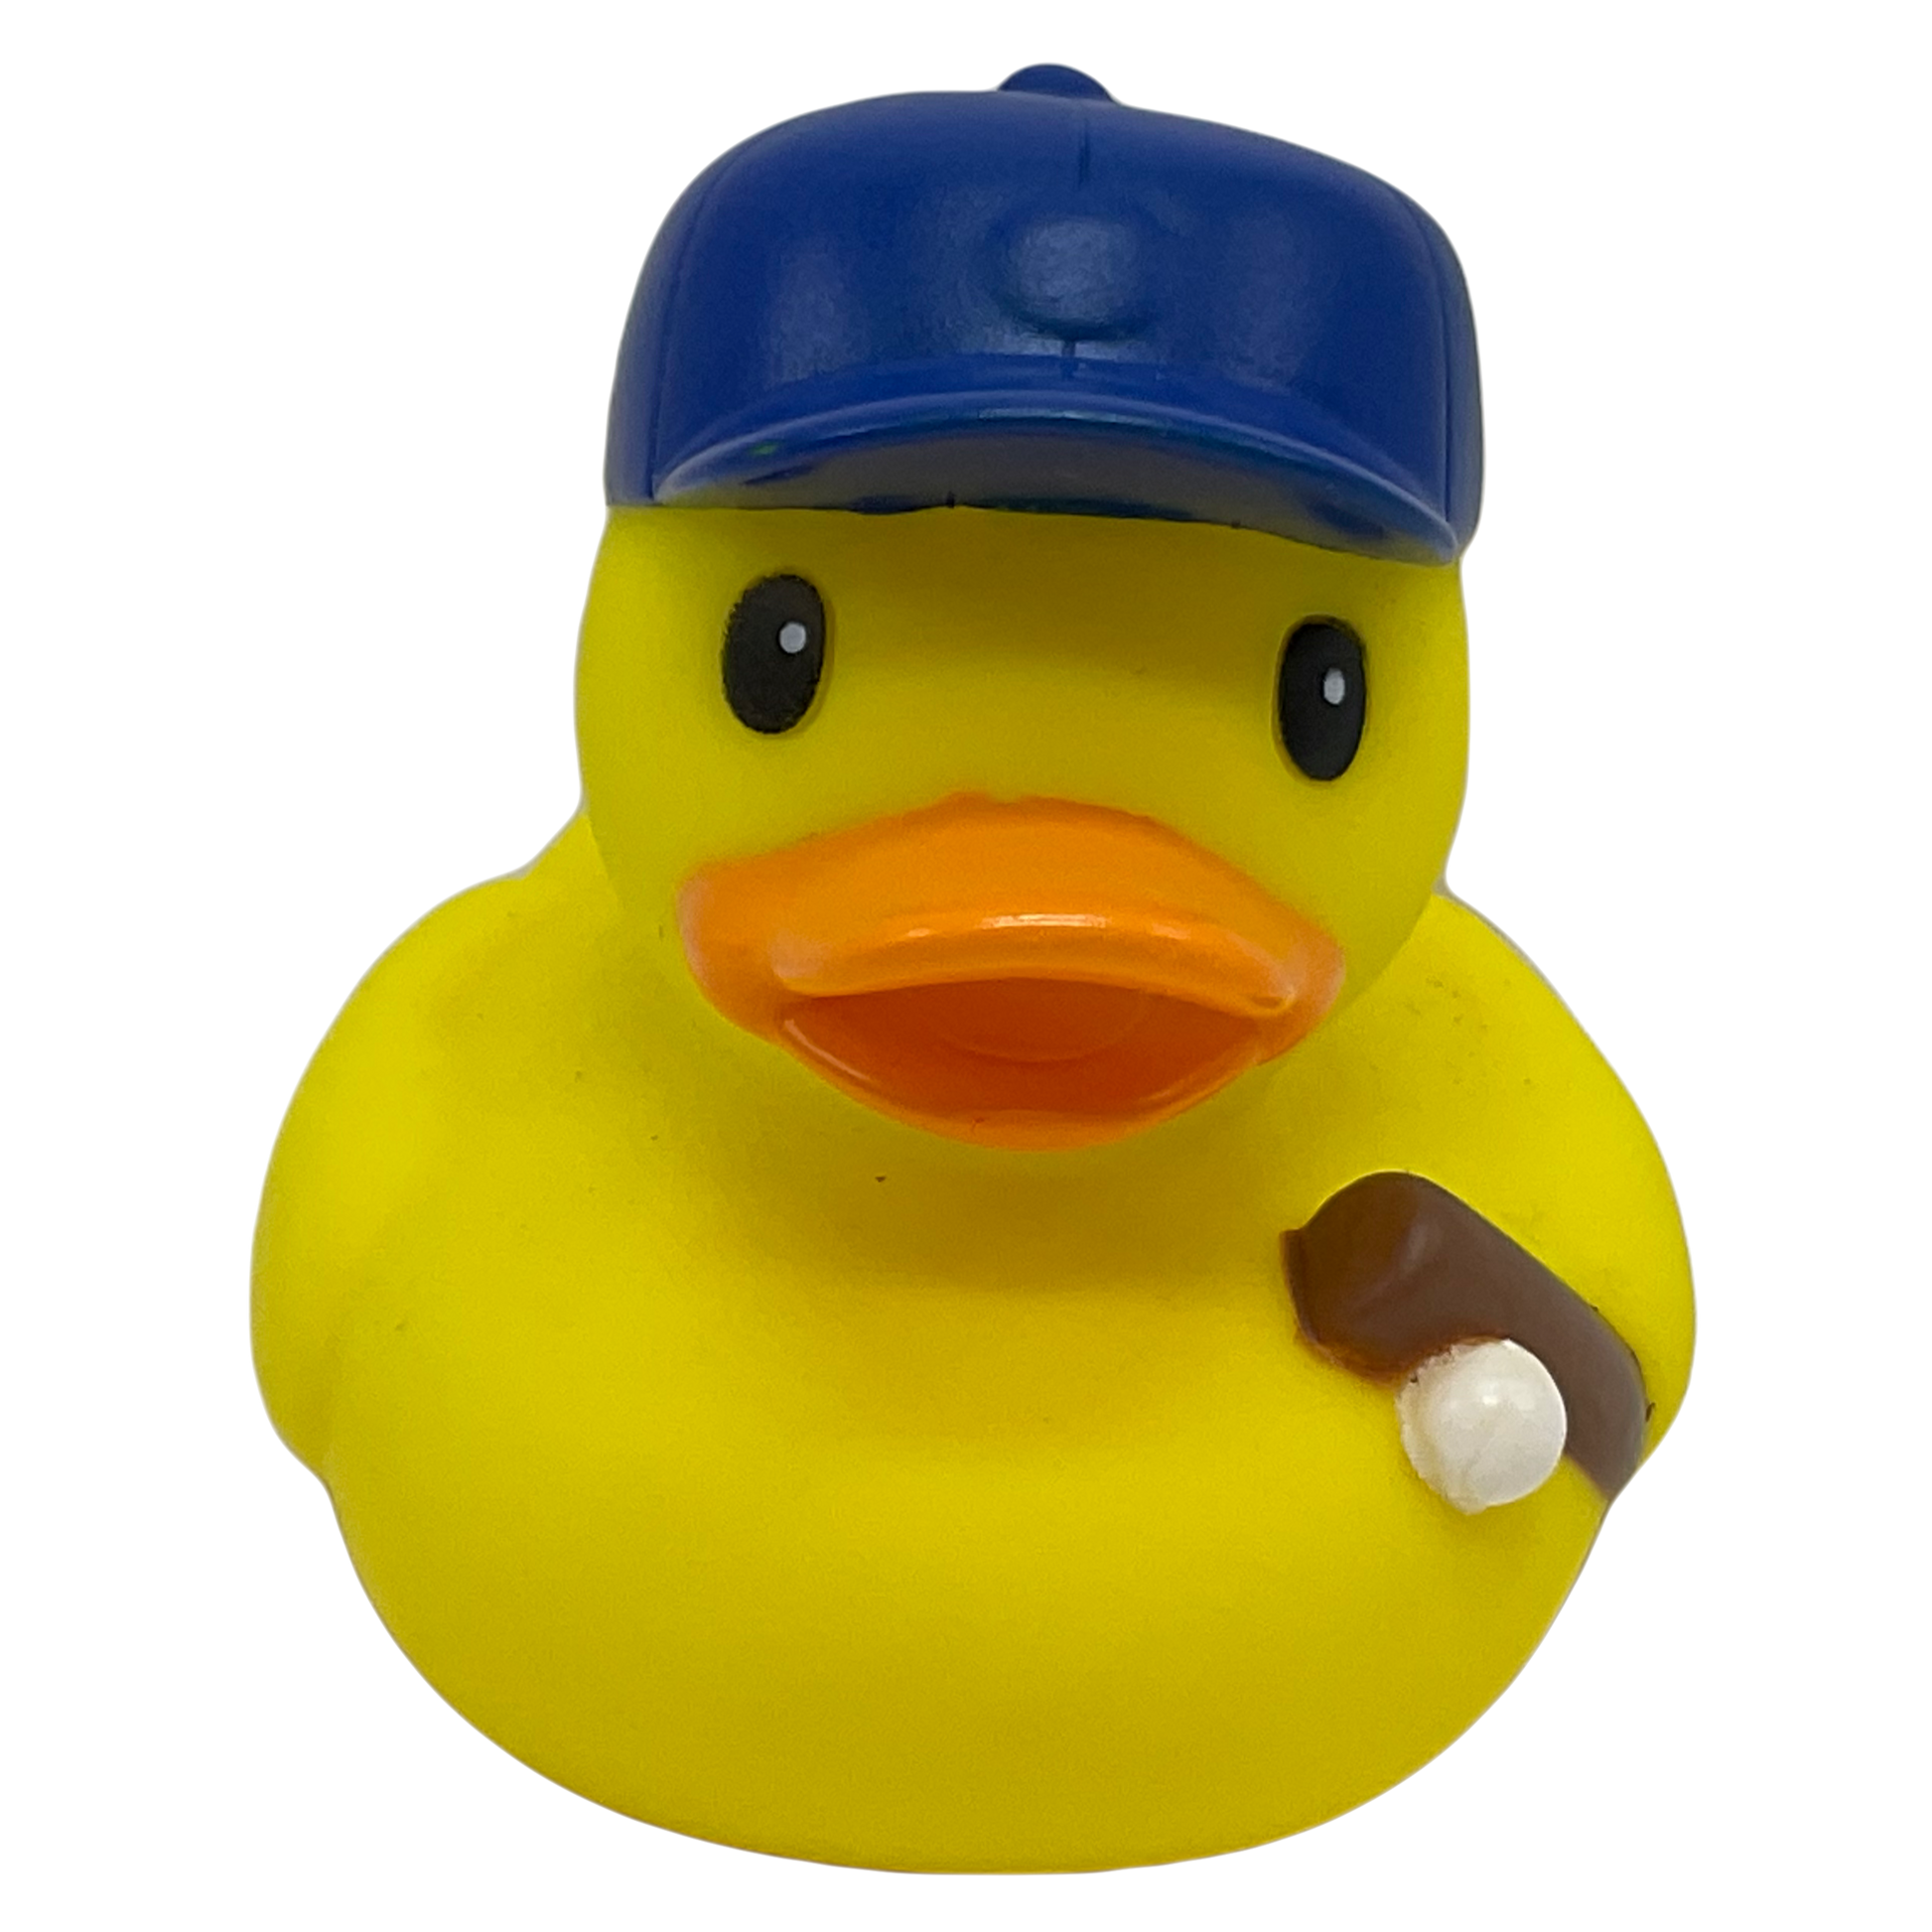 Baseball Player 3" Rubber Duck